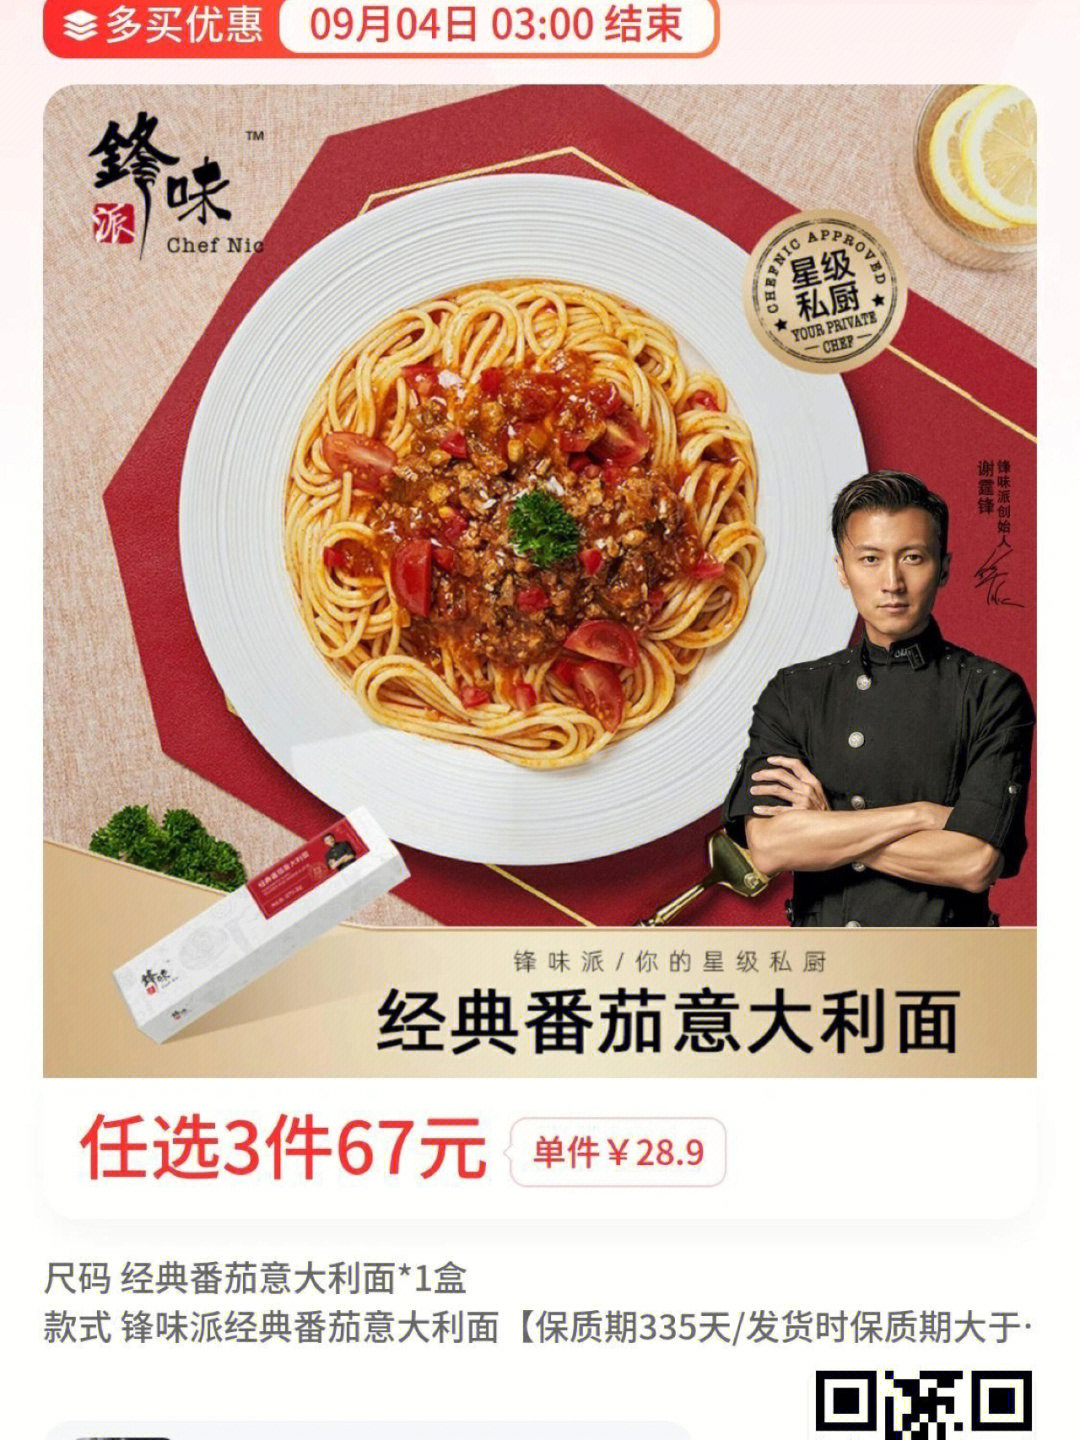 创始人谢霆锋73荣获2022年度美味奖品牌73米其林之友chef nic联合